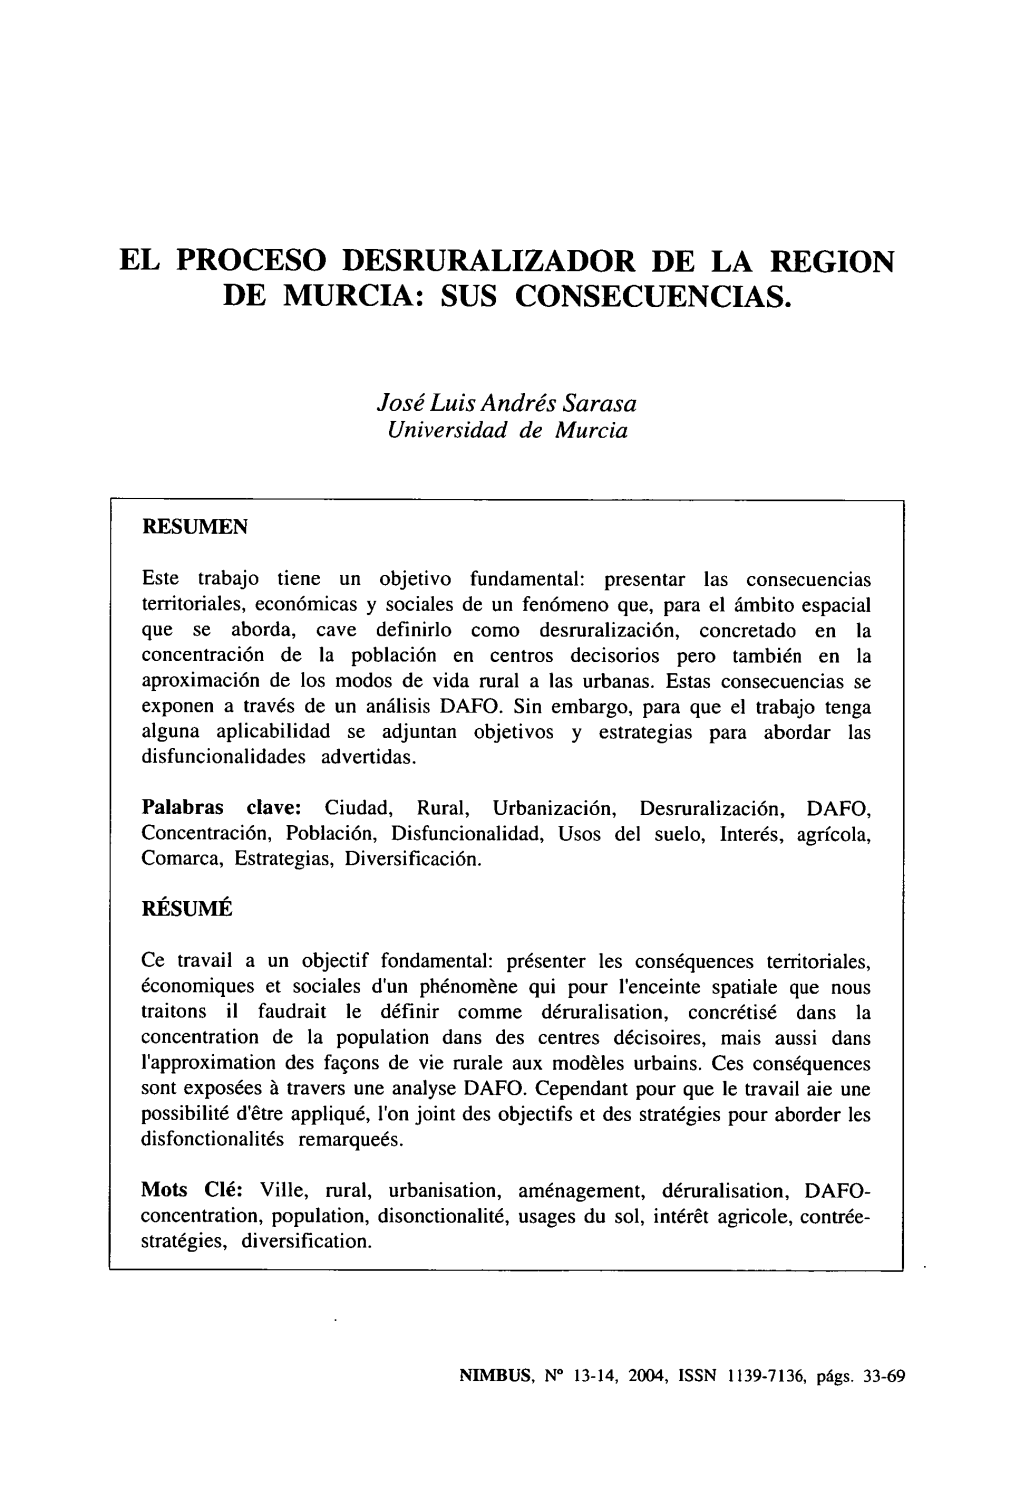 El Proceso Desruralizador De La Region De Murcia: Sus Consecuencias